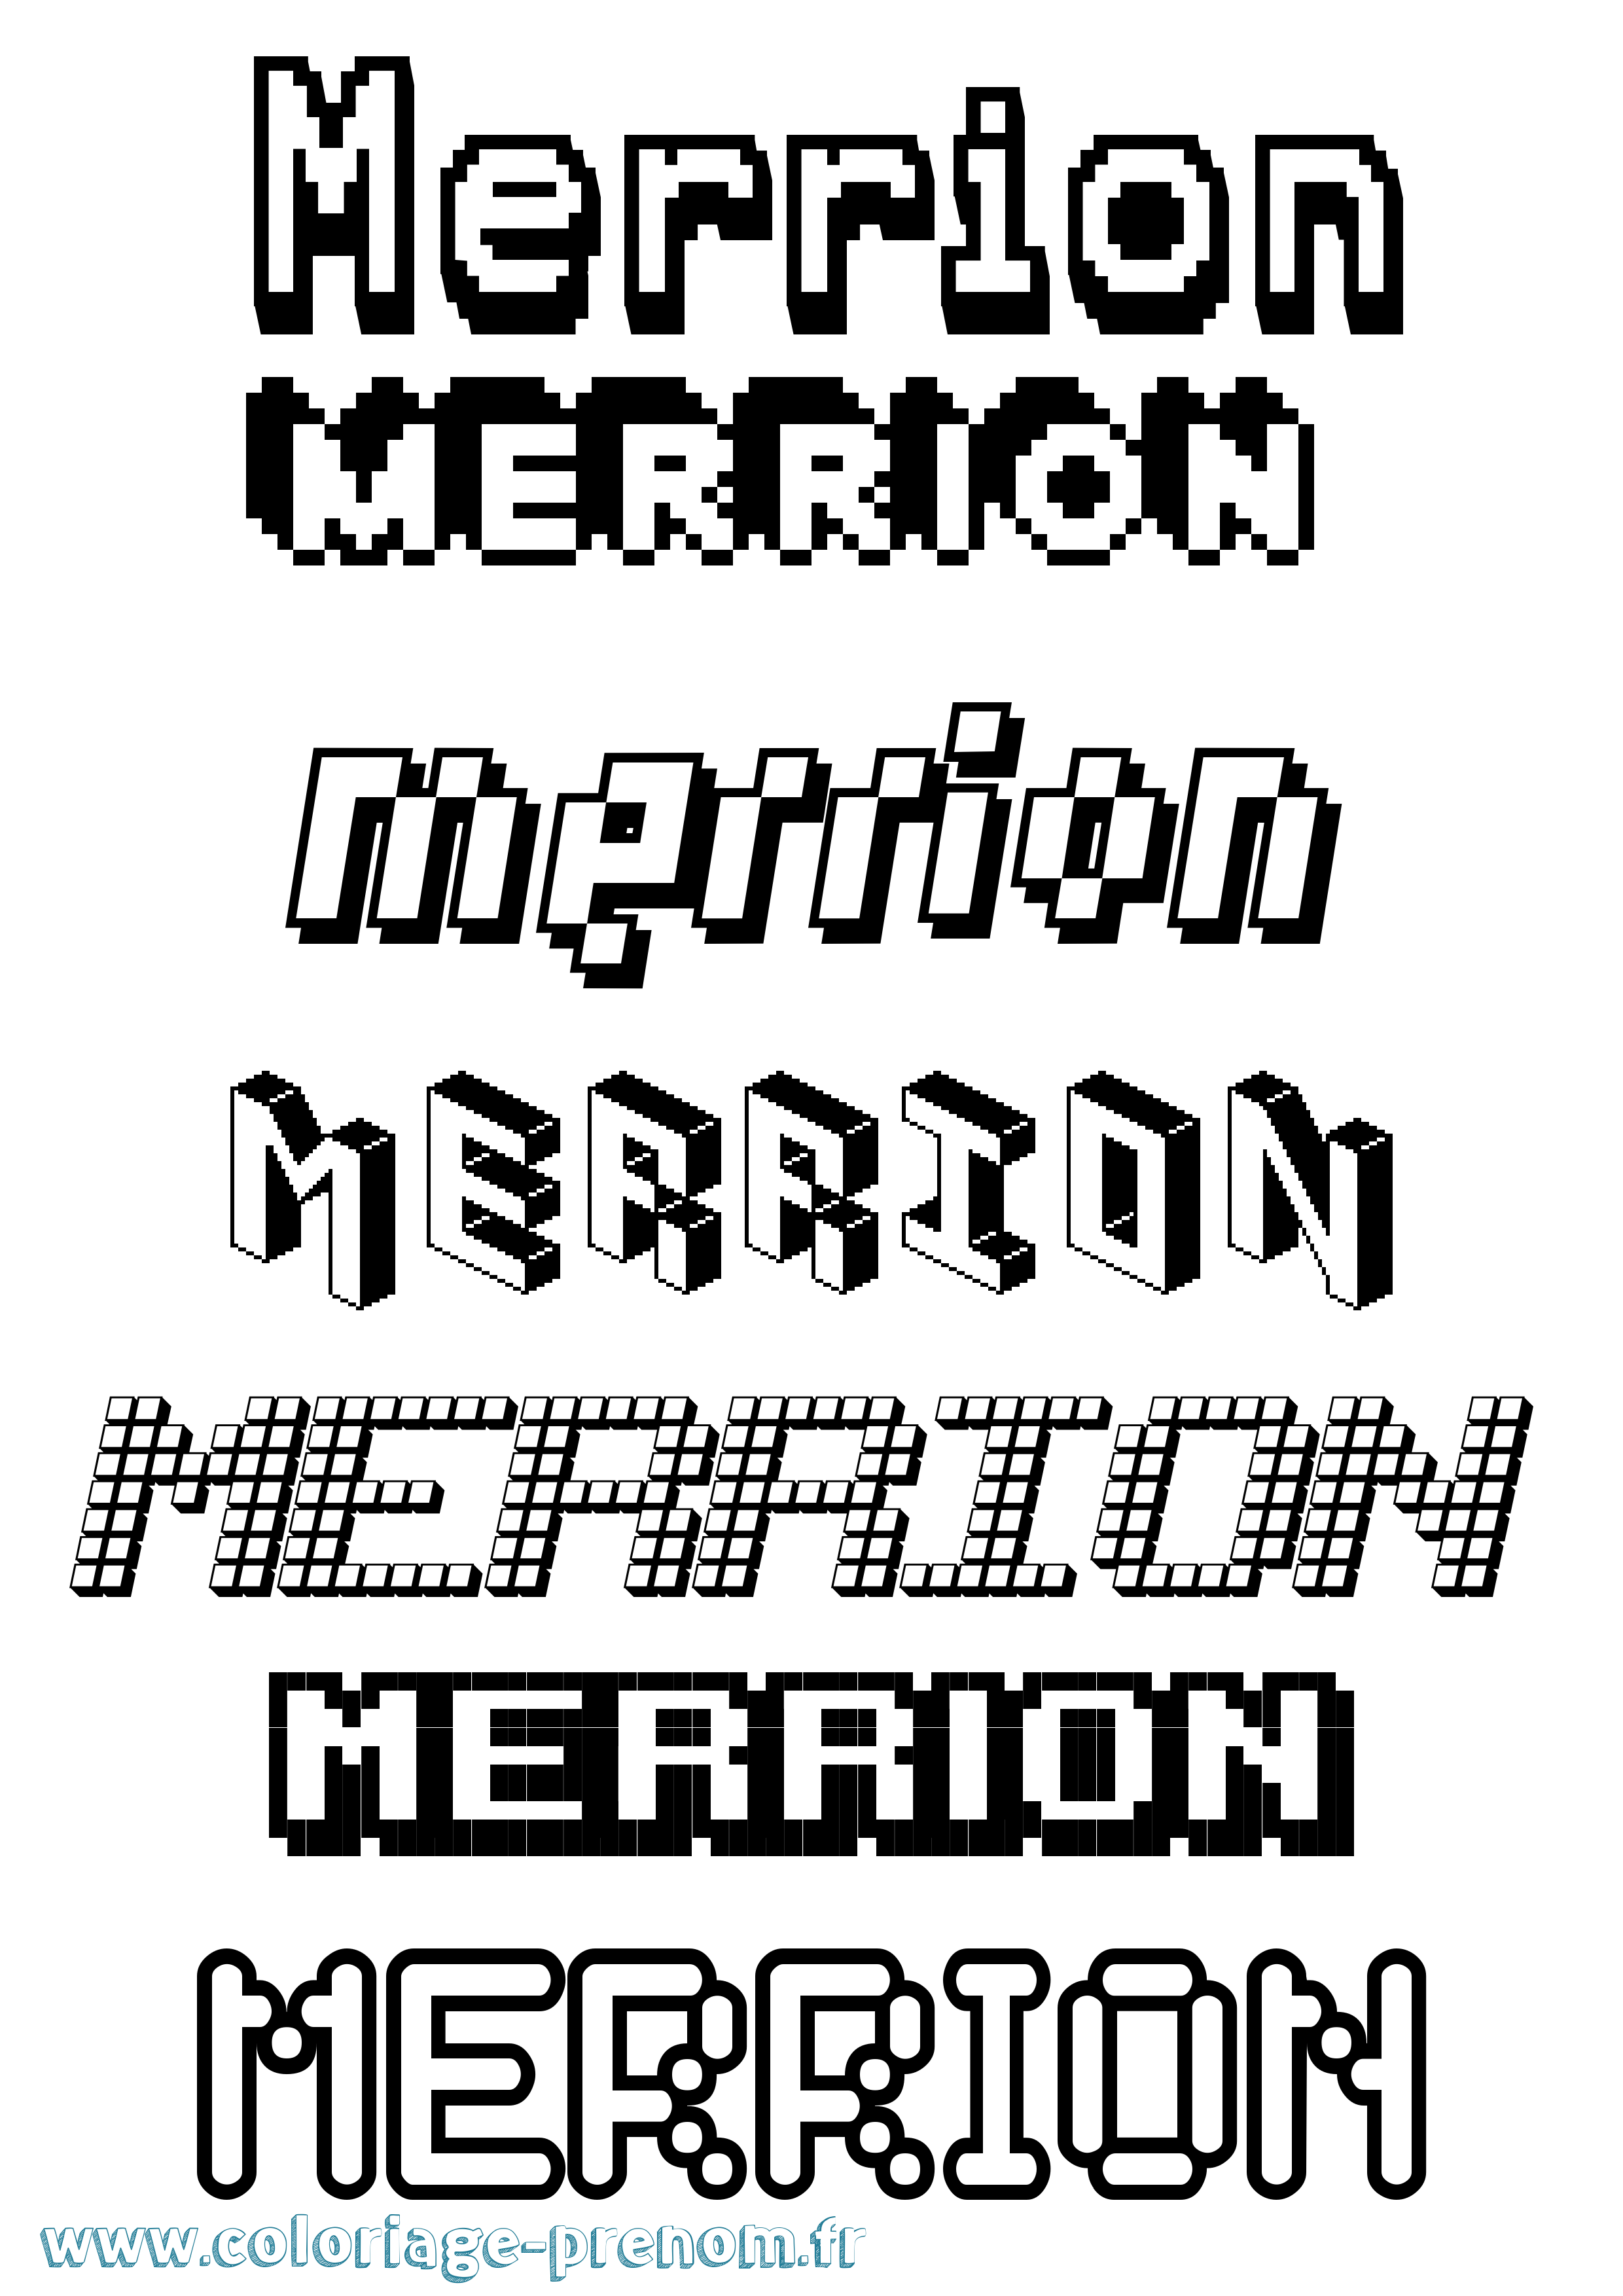 Coloriage prénom Merrion Pixel